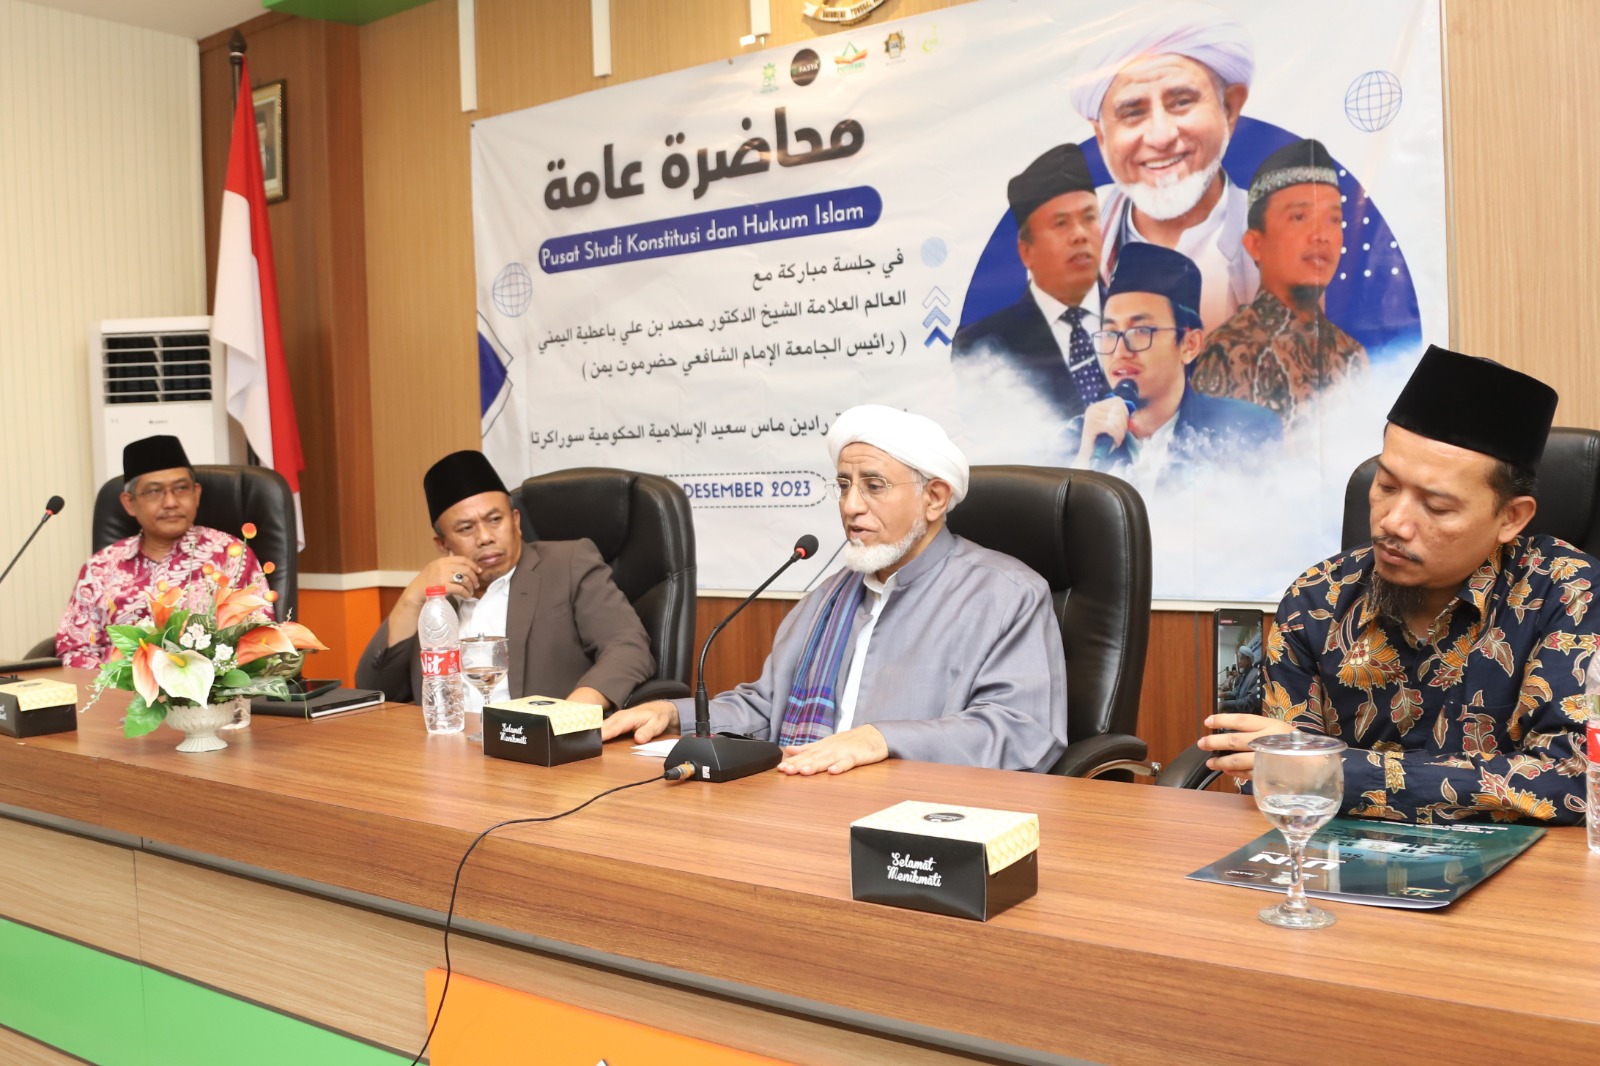 Fakultas Syariah UIN RM Said Hadirkan Dosen Tamu Dari Yaman